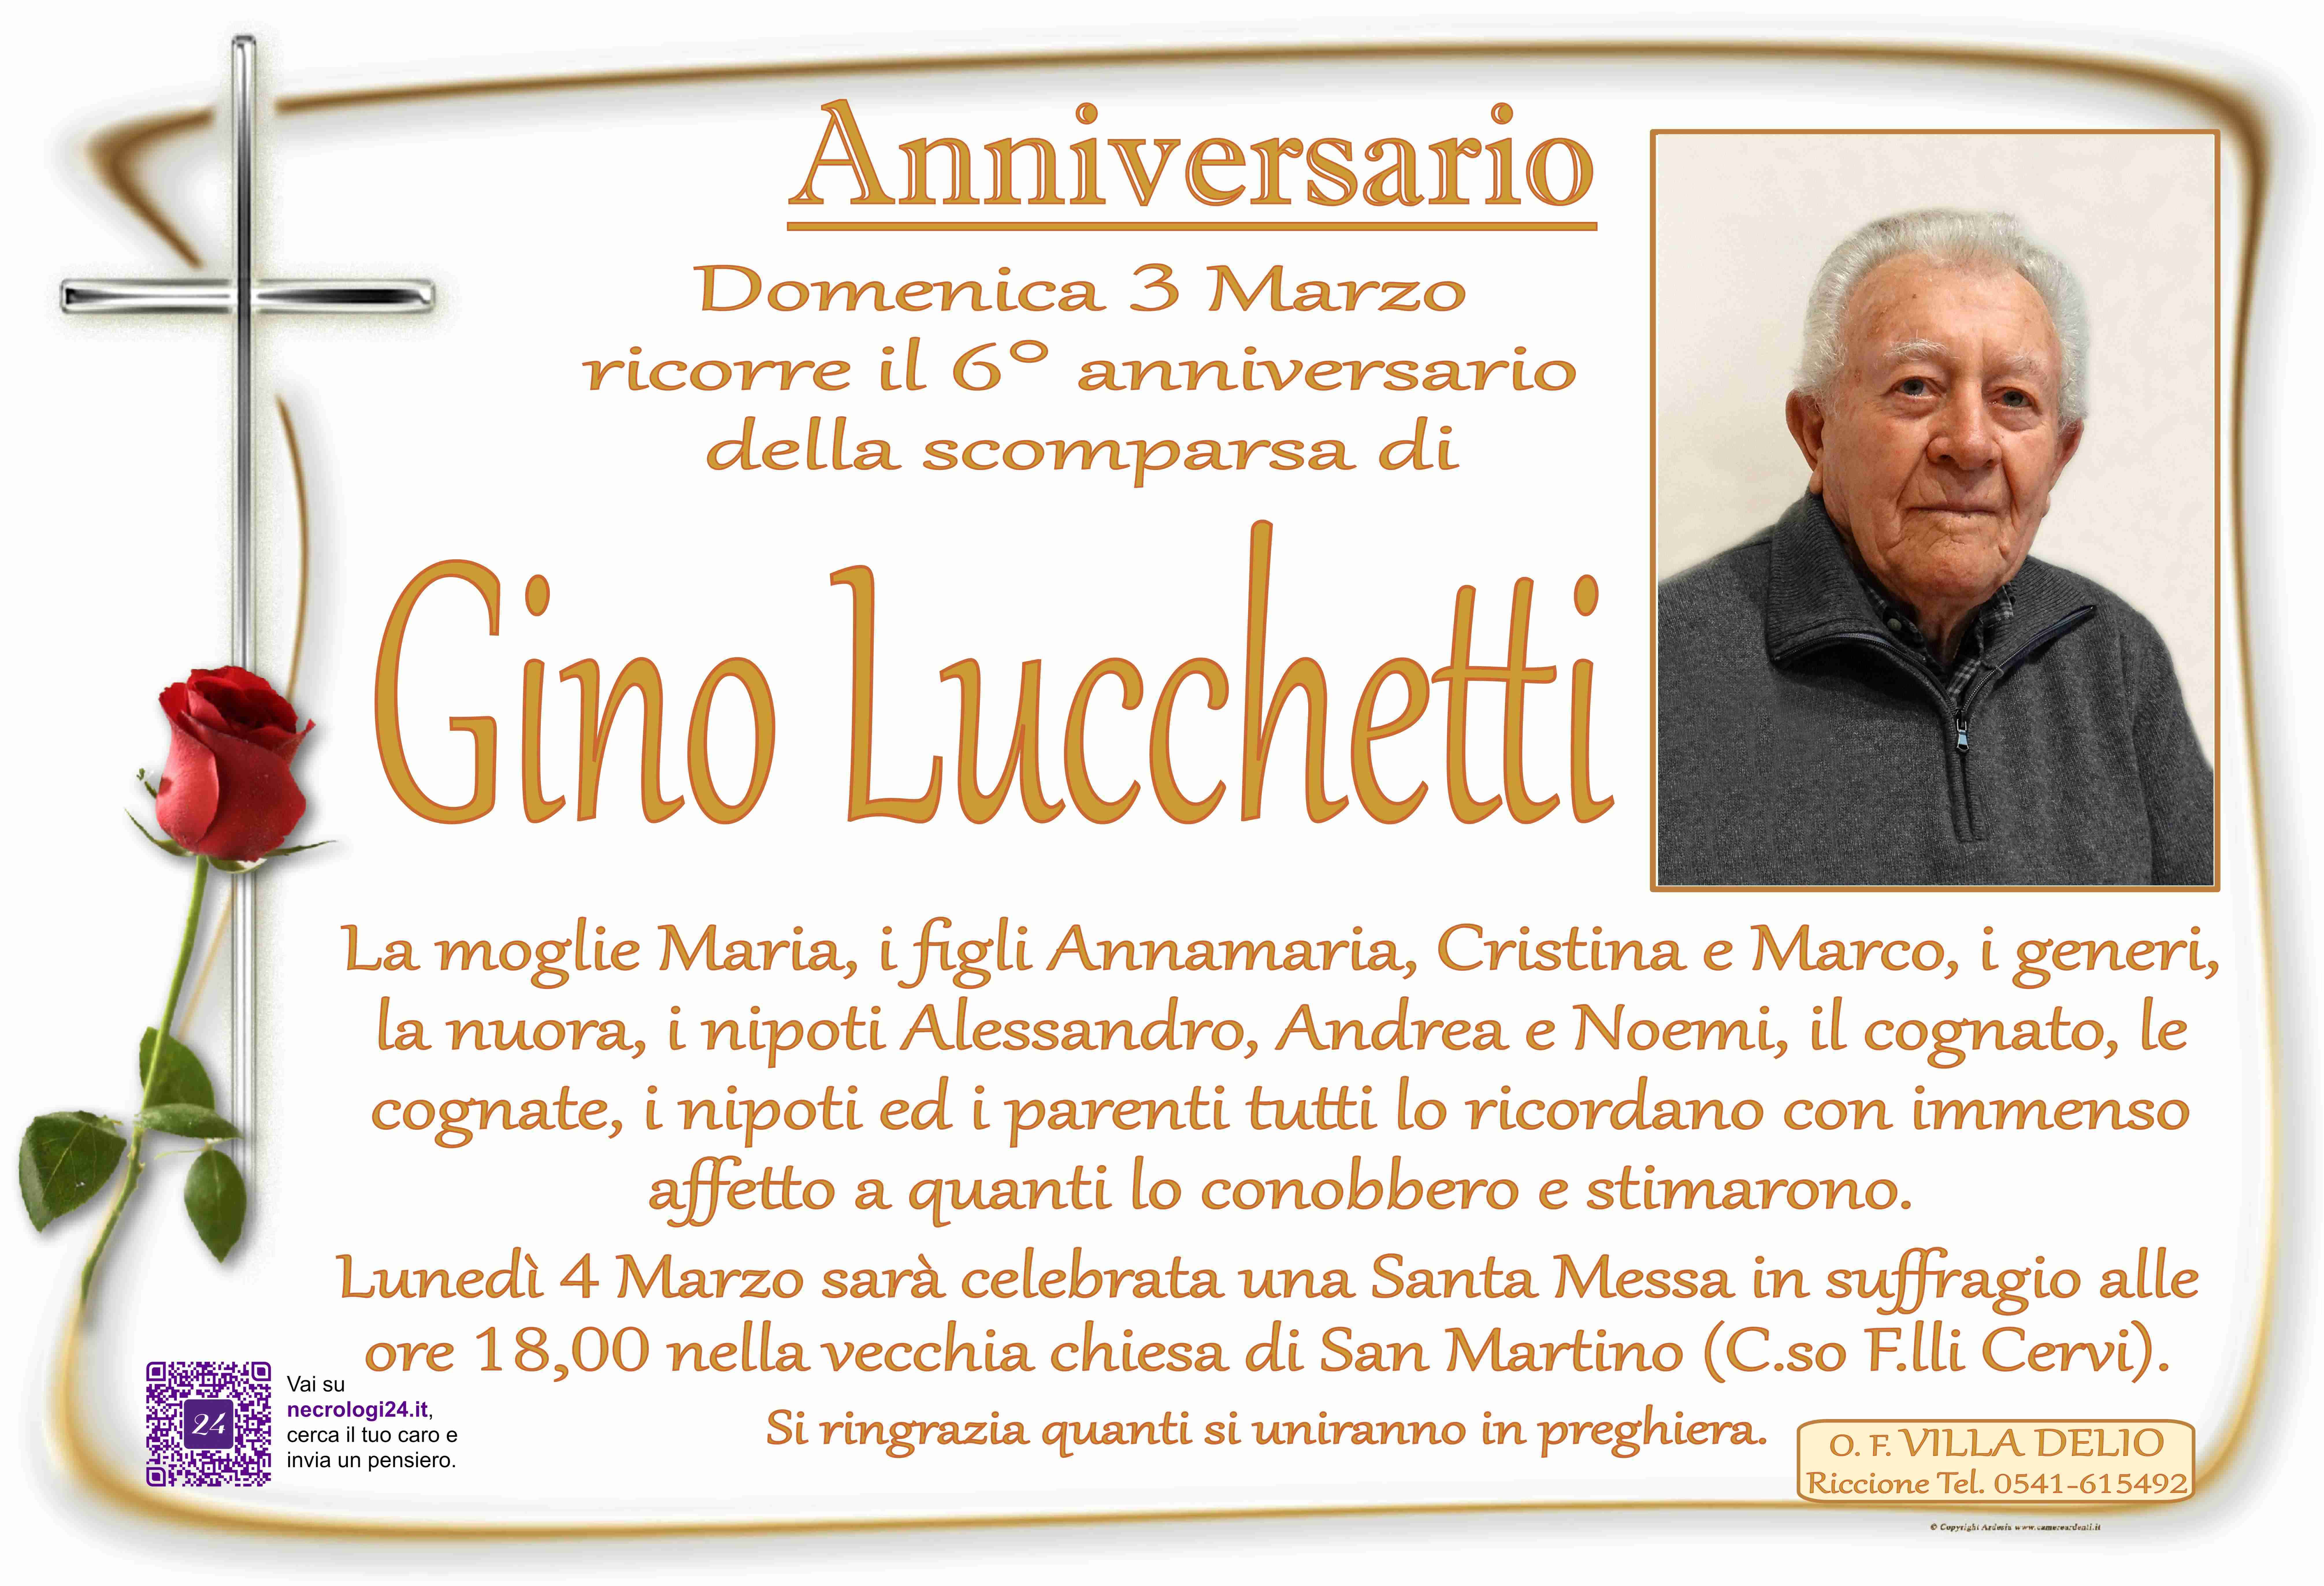 Gino Lucchetti